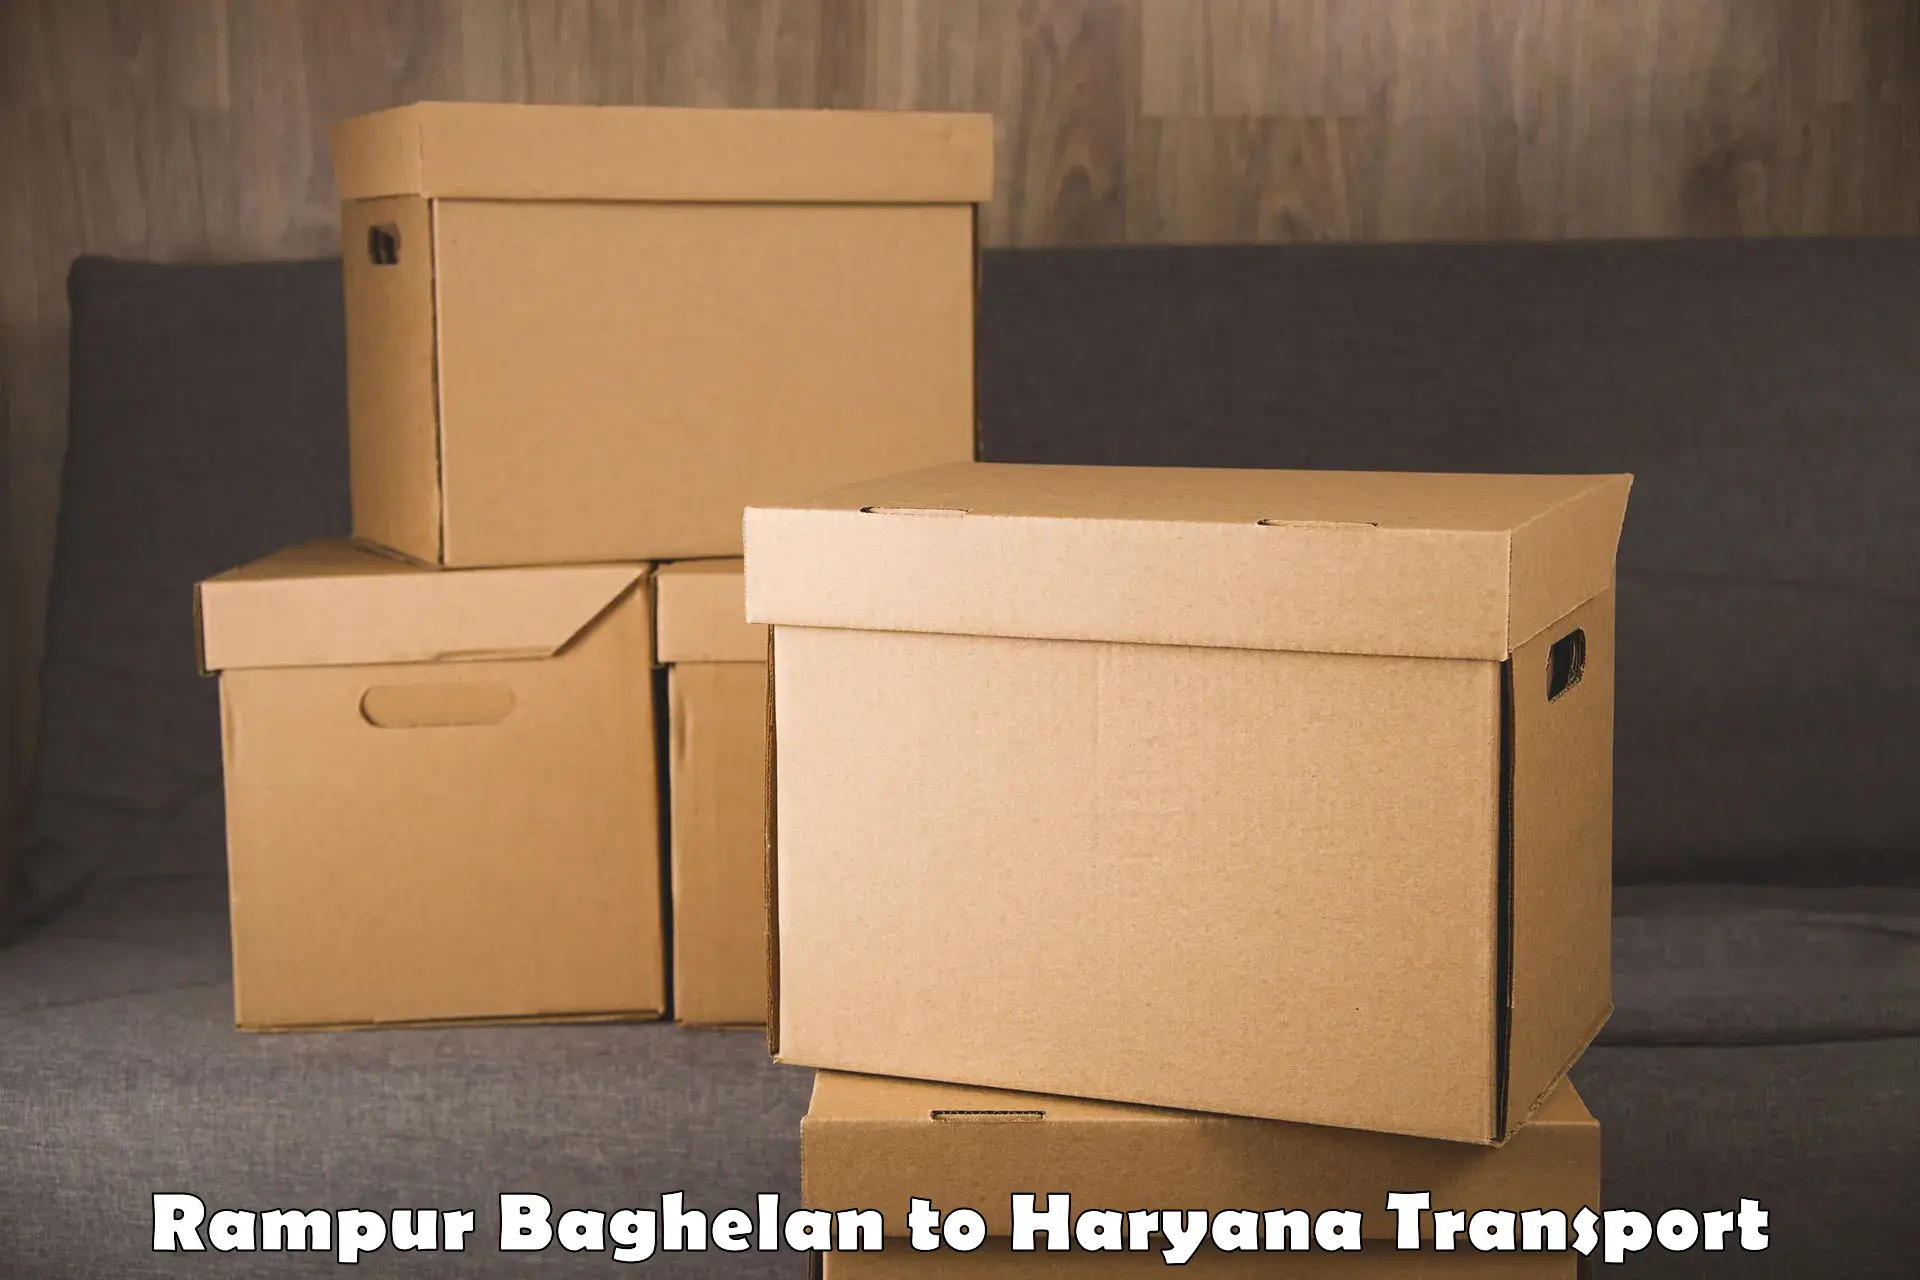 Daily parcel service transport Rampur Baghelan to Jhajjar